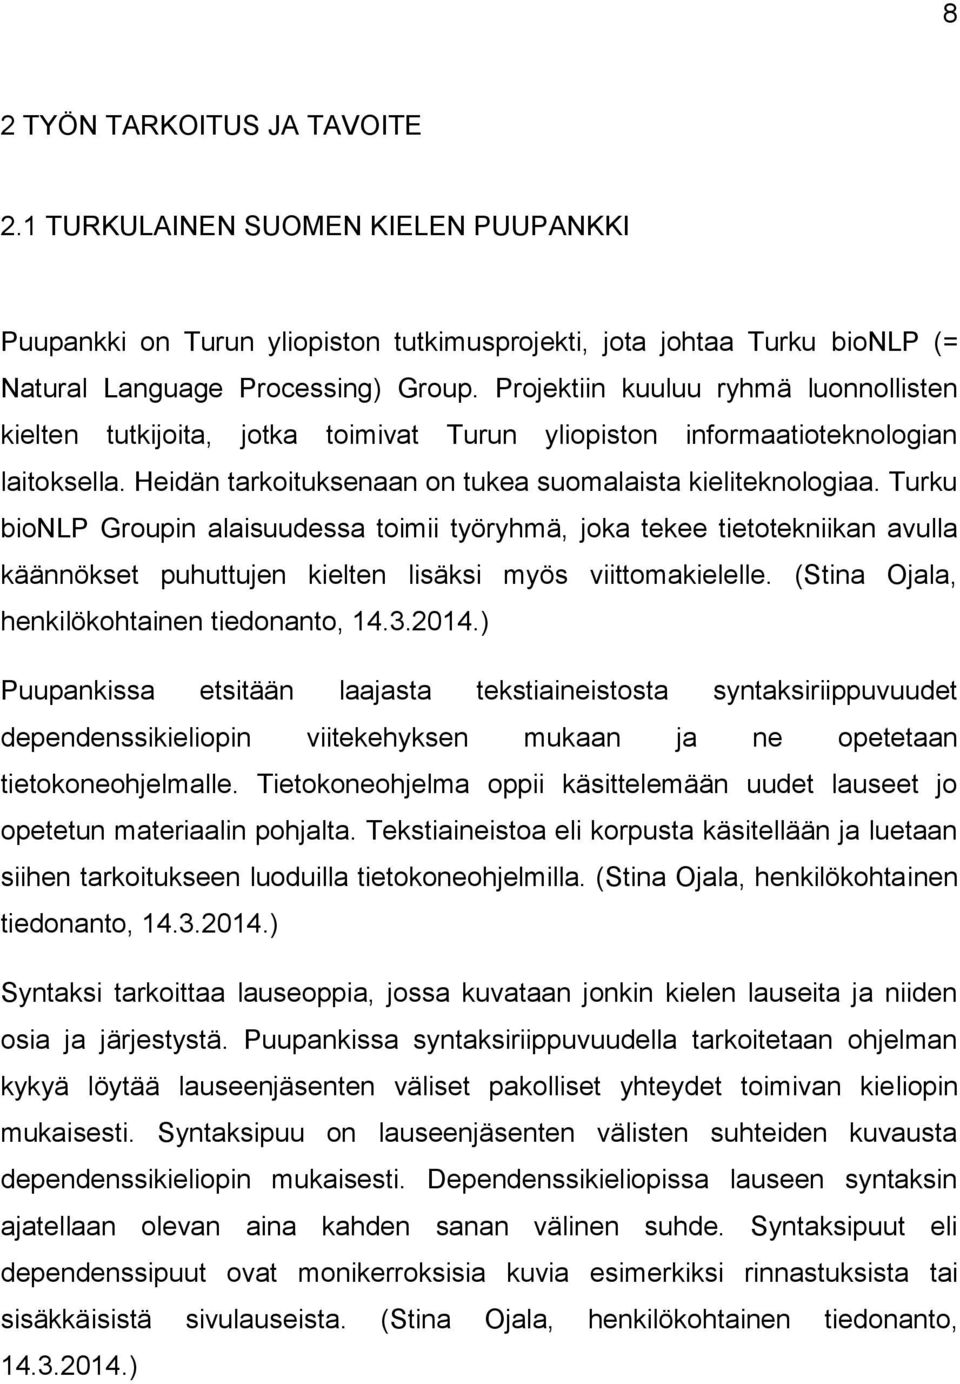 Turku bionlp Groupin alaisuudessa toimii työryhmä, joka tekee tietotekniikan avulla käännökset puhuttujen kielten lisäksi myös viittomakielelle. (Stina Ojala, henkilökohtainen tiedonanto, 14.3.2014.